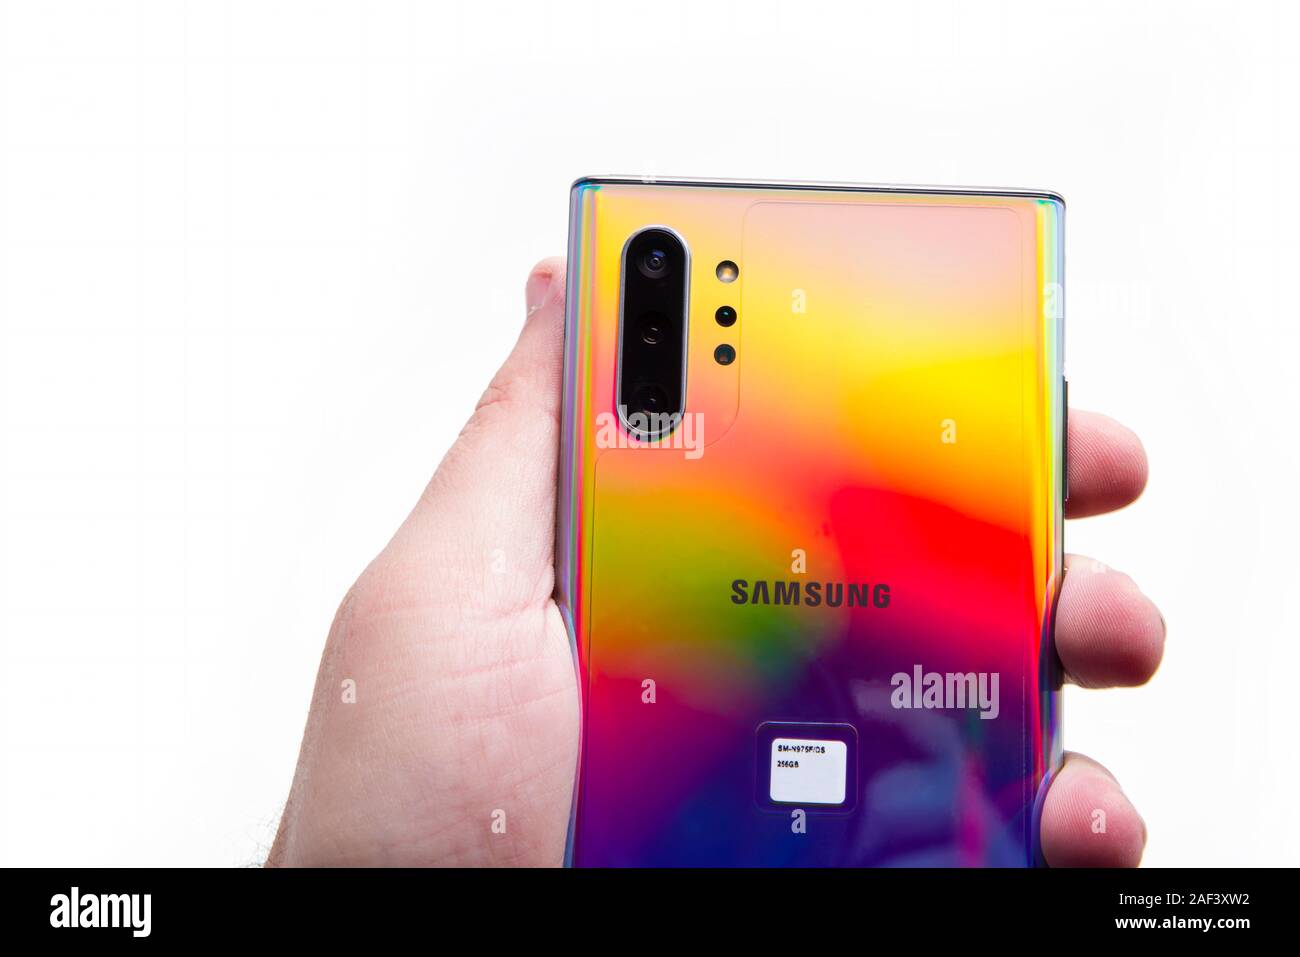 PIATRA Neamt, Roumanie - 22 NOVEMBRE 2019 : Samsung Note 10 avec caméra couleur et triple arrière Banque D'Images